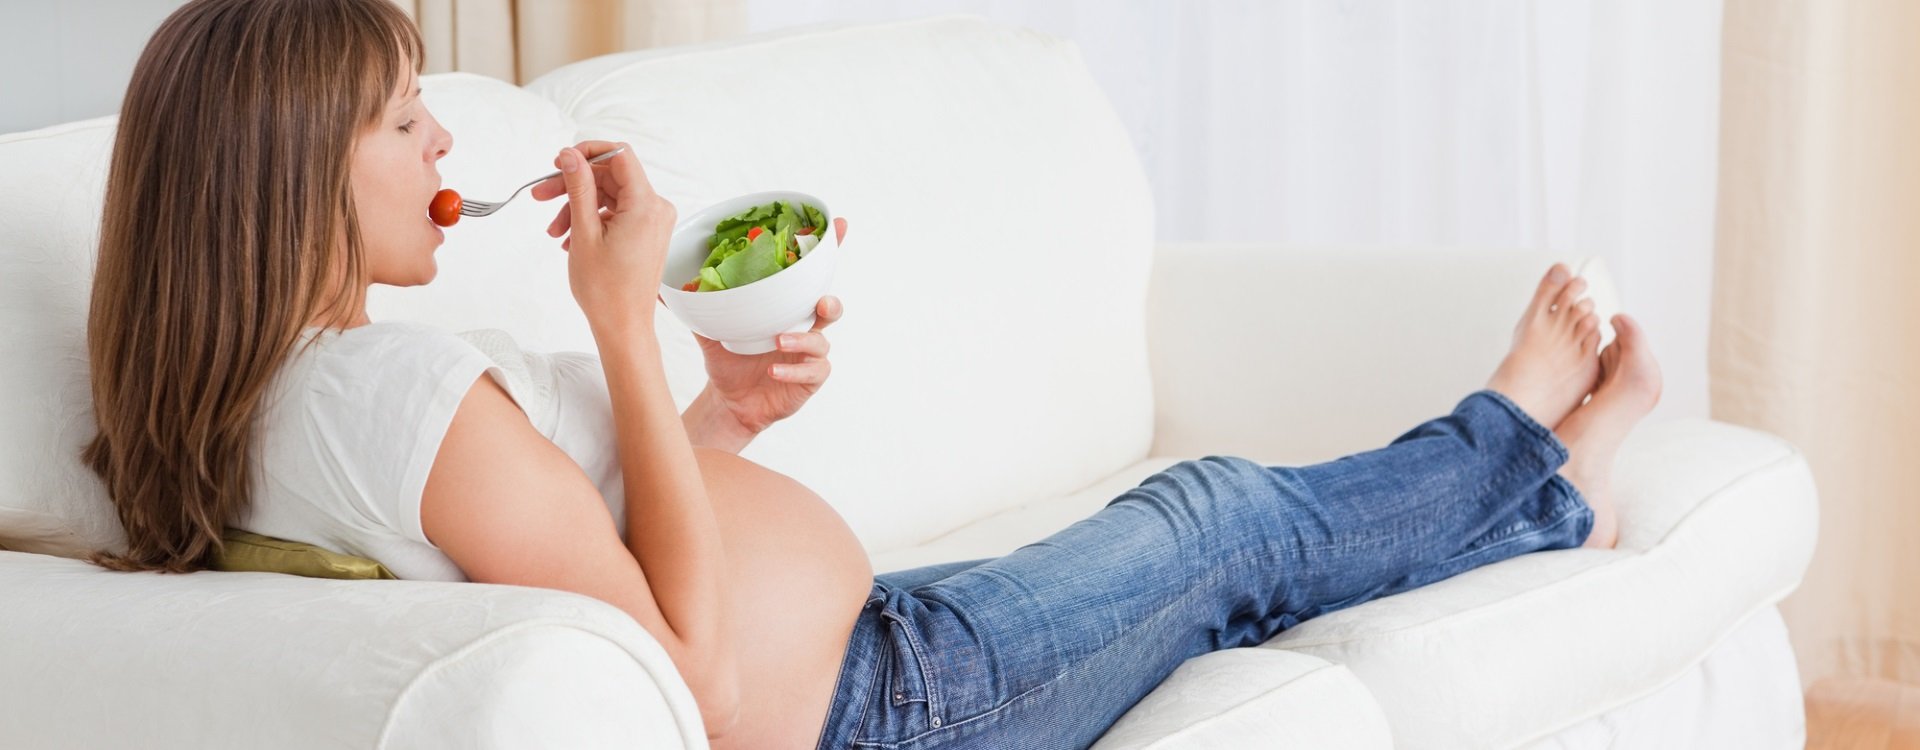 Schwangere, die auf dem Sofa liegt und Salat isst